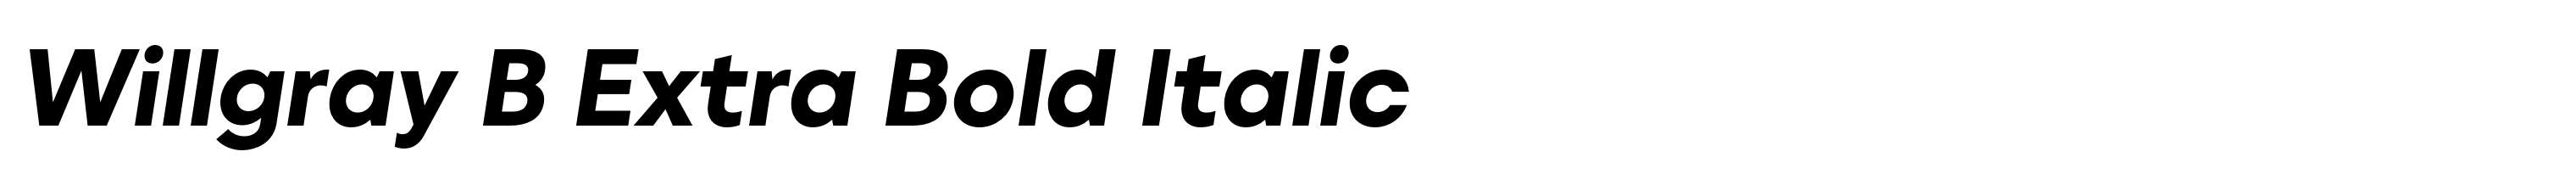 Willgray B Extra Bold Italic